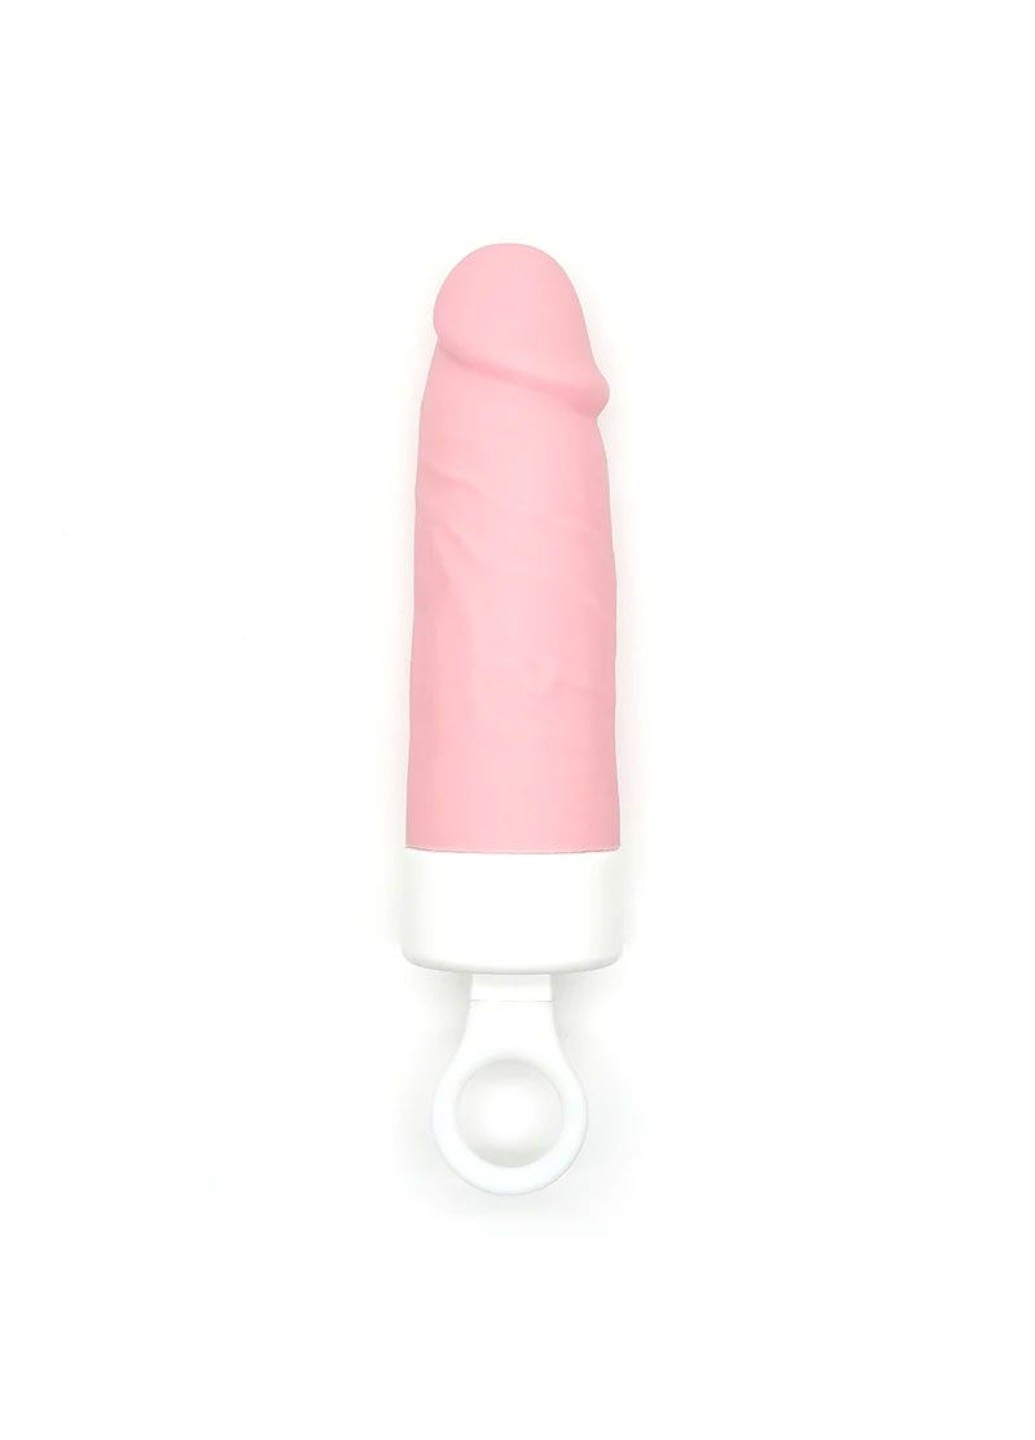 Вибратор Teddy Brown (Pink Dildo), реалистичный вибратор под видом мороженого CuteVibe (259454363)